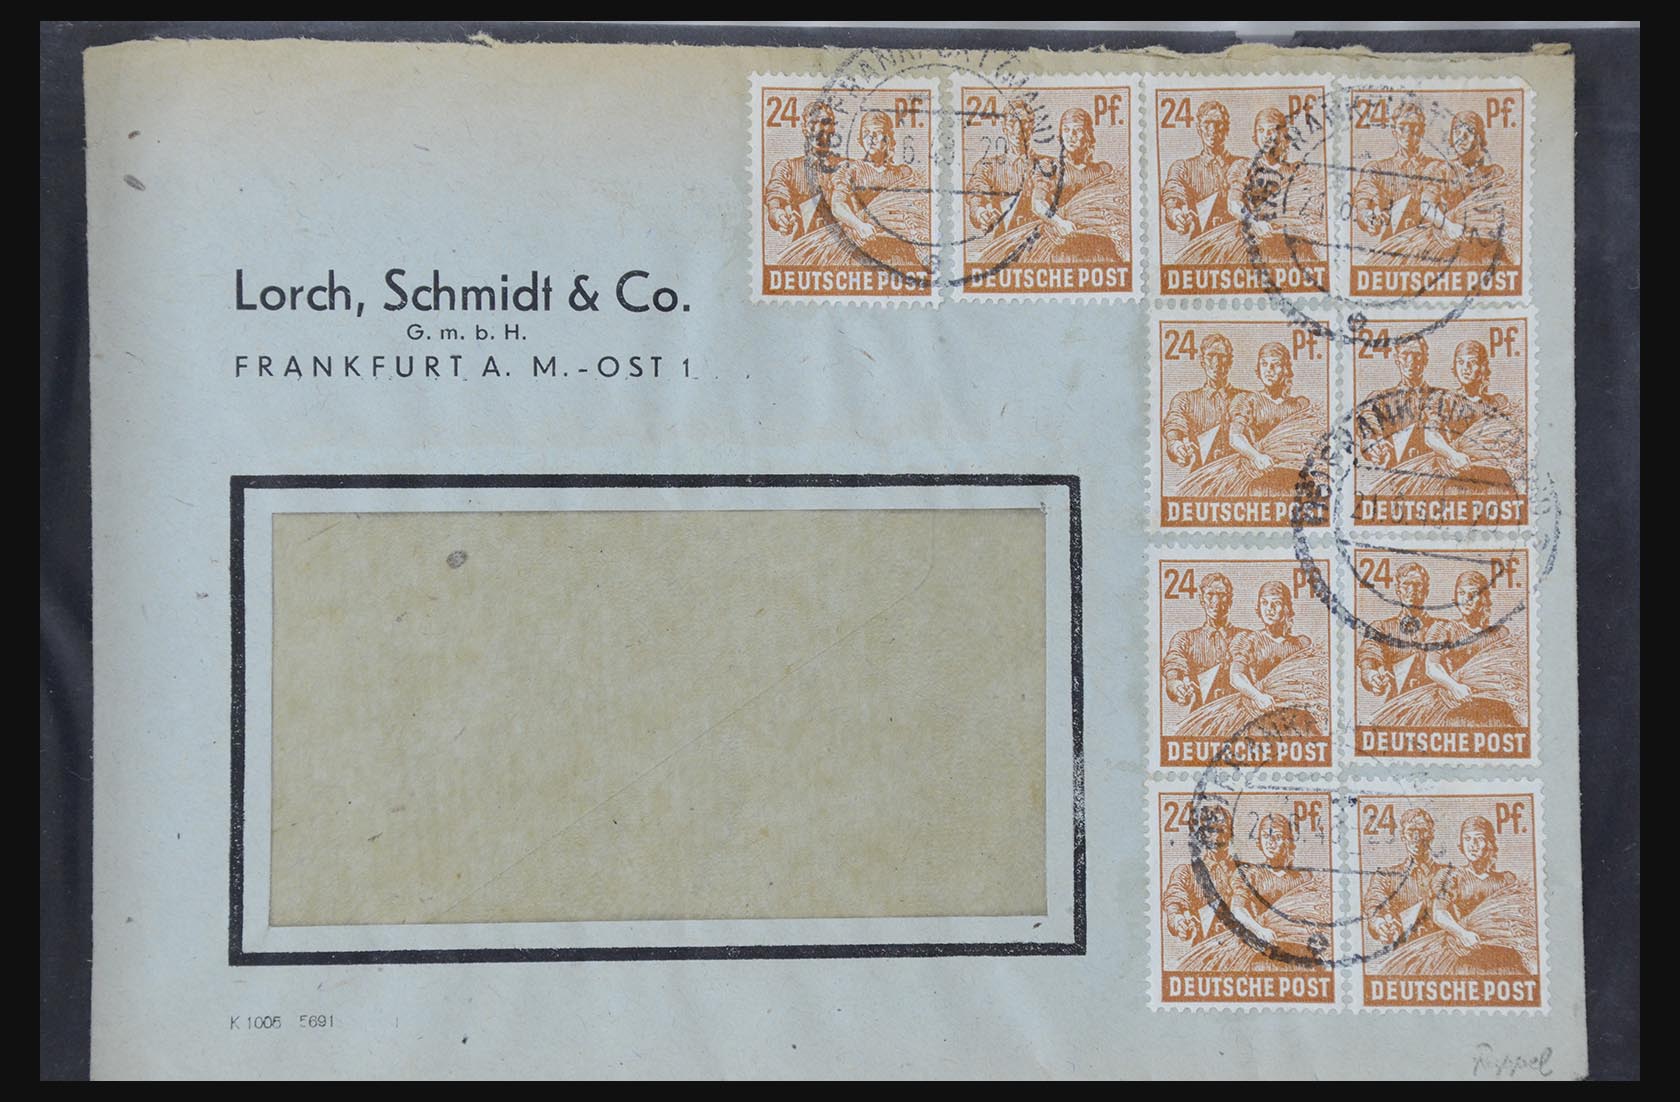 31581 011 - 31581 Duitsland brieven en FDC's 1945-1981.